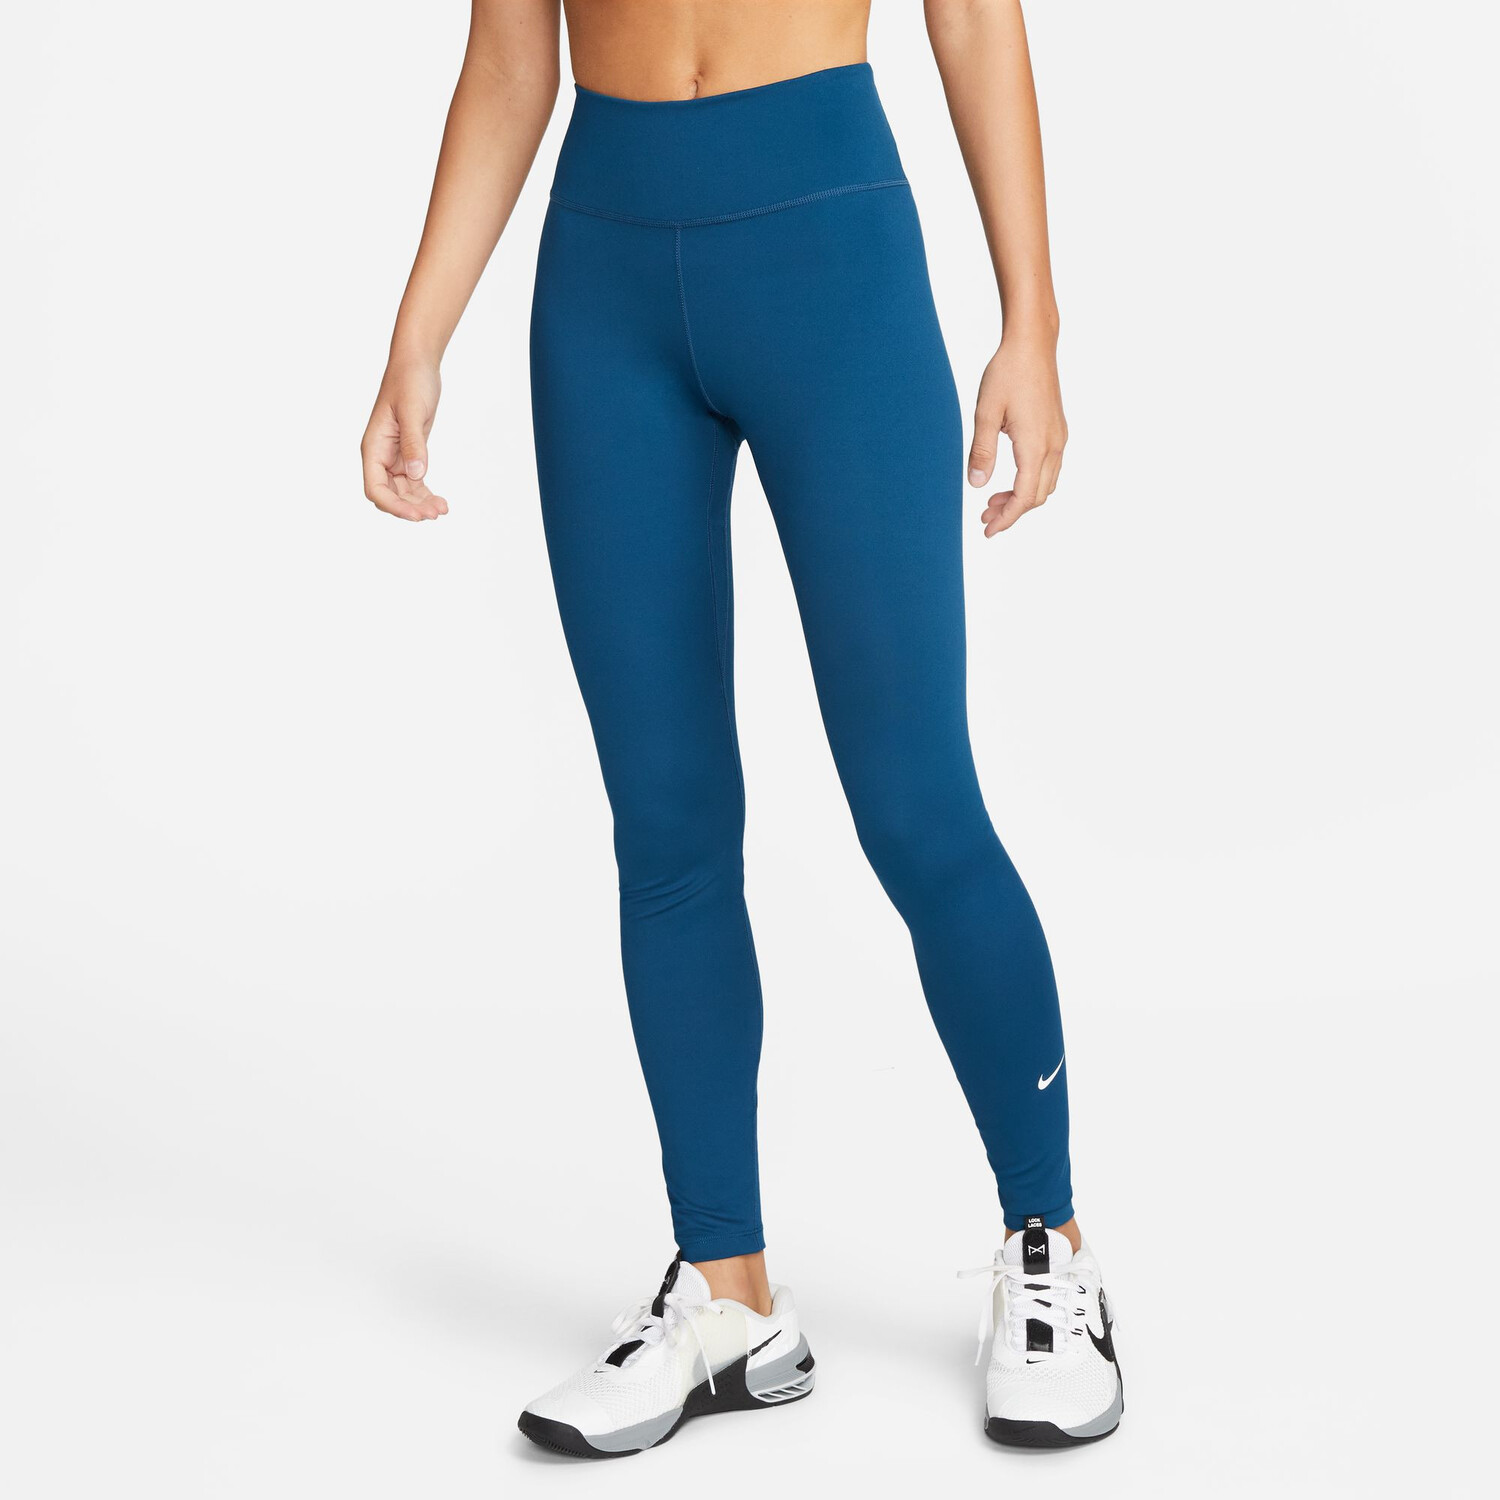 Legging Femme Nike One bleu